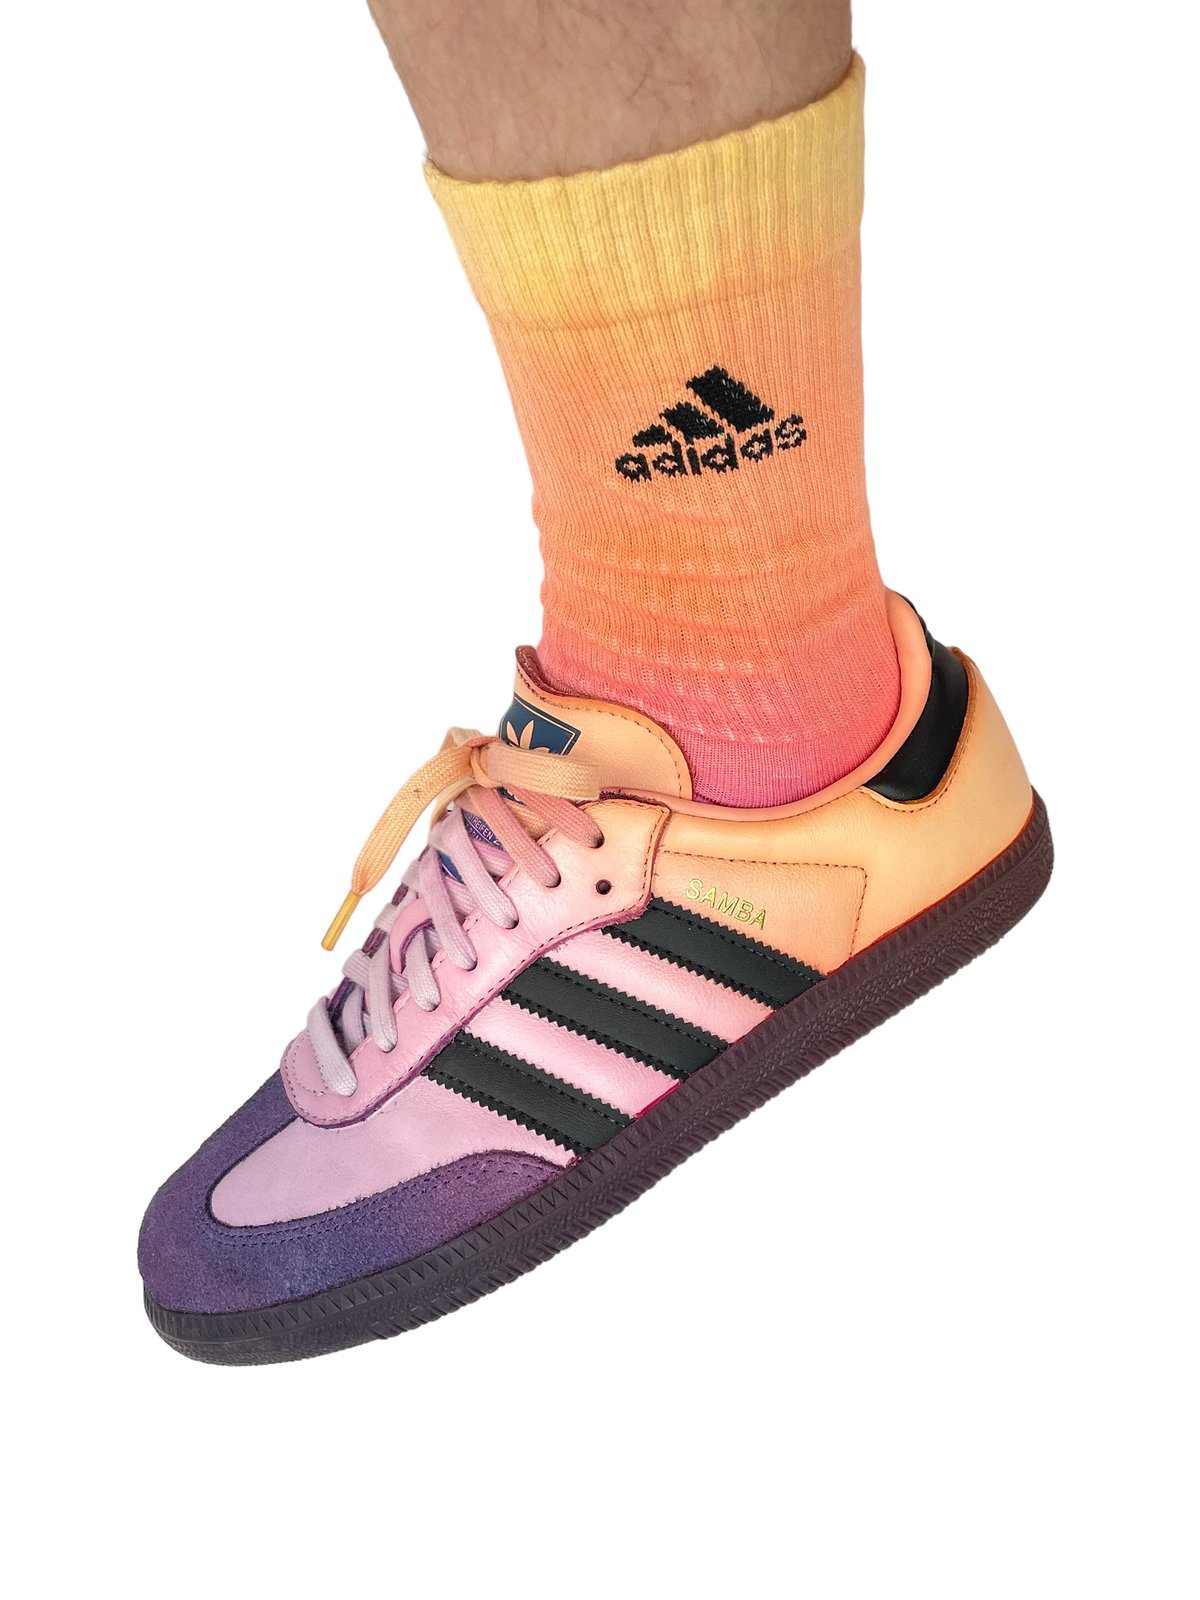 Image of Adidas Socks Dyed Sunset